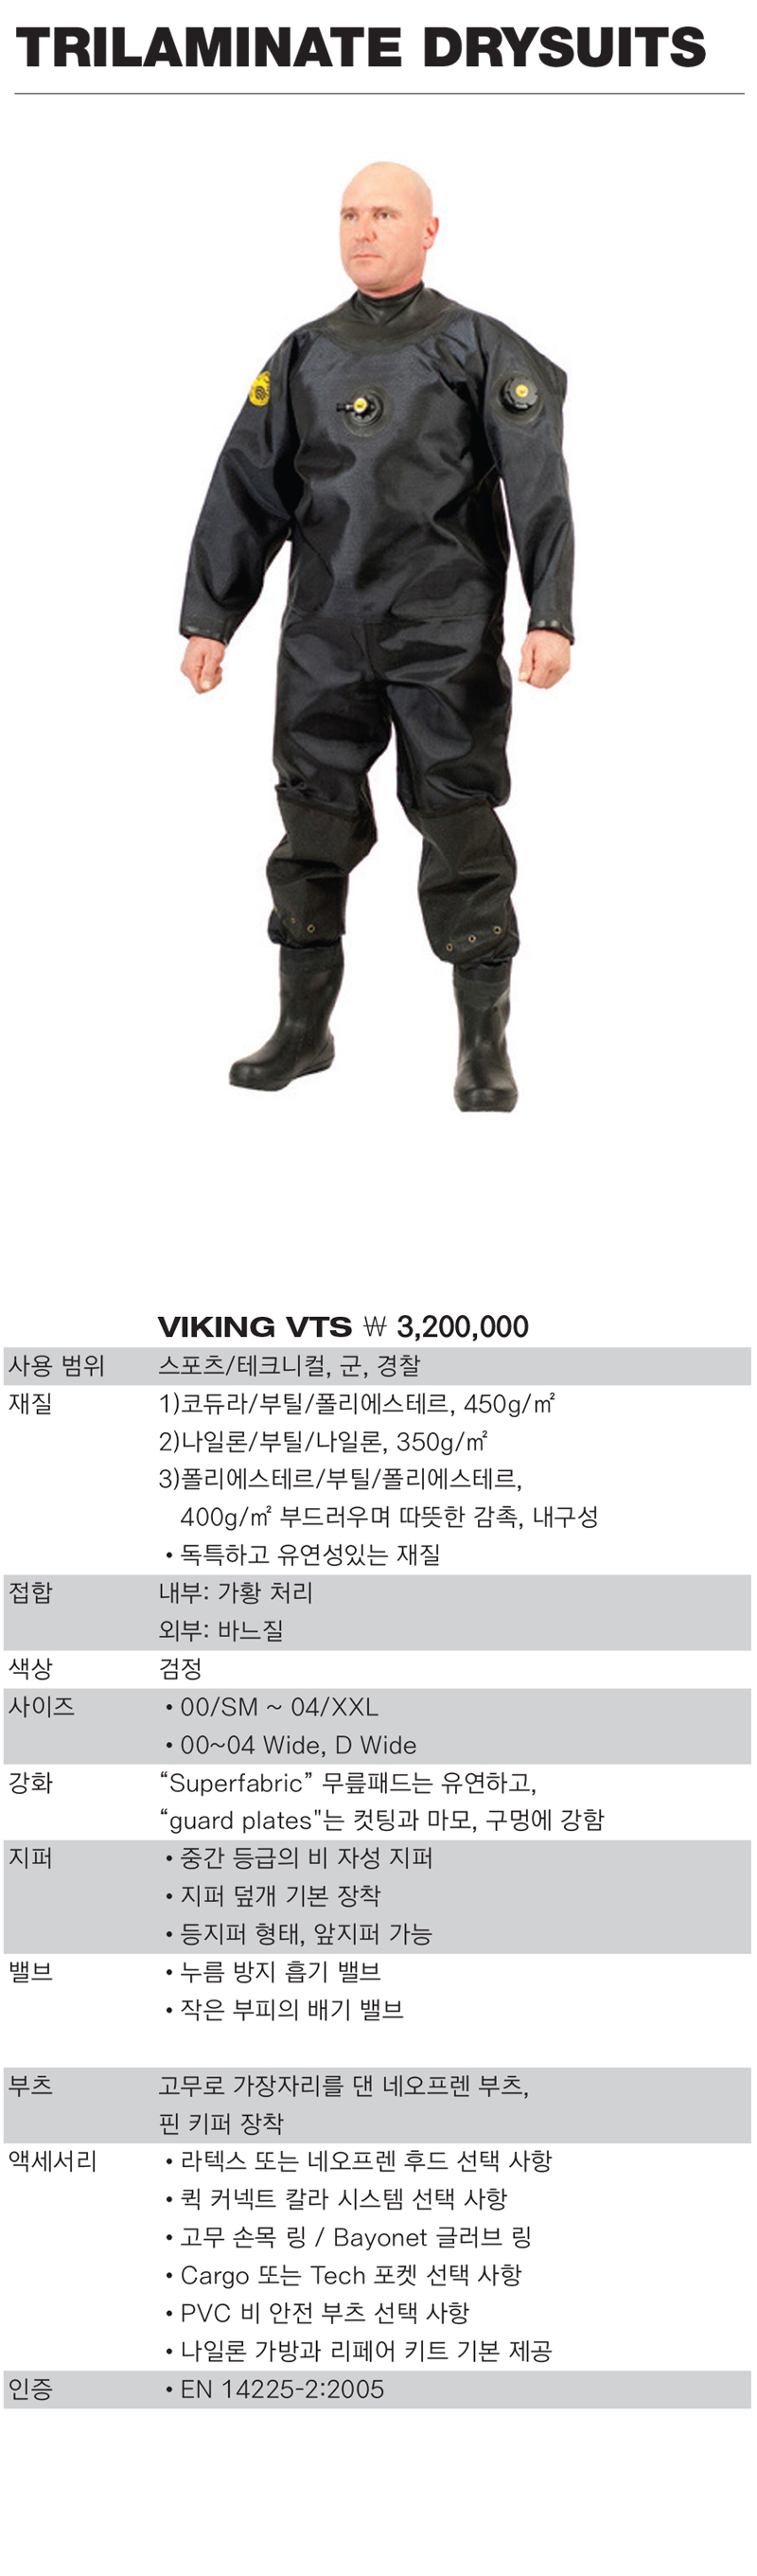 viking%2Dvts%5F1.jpg